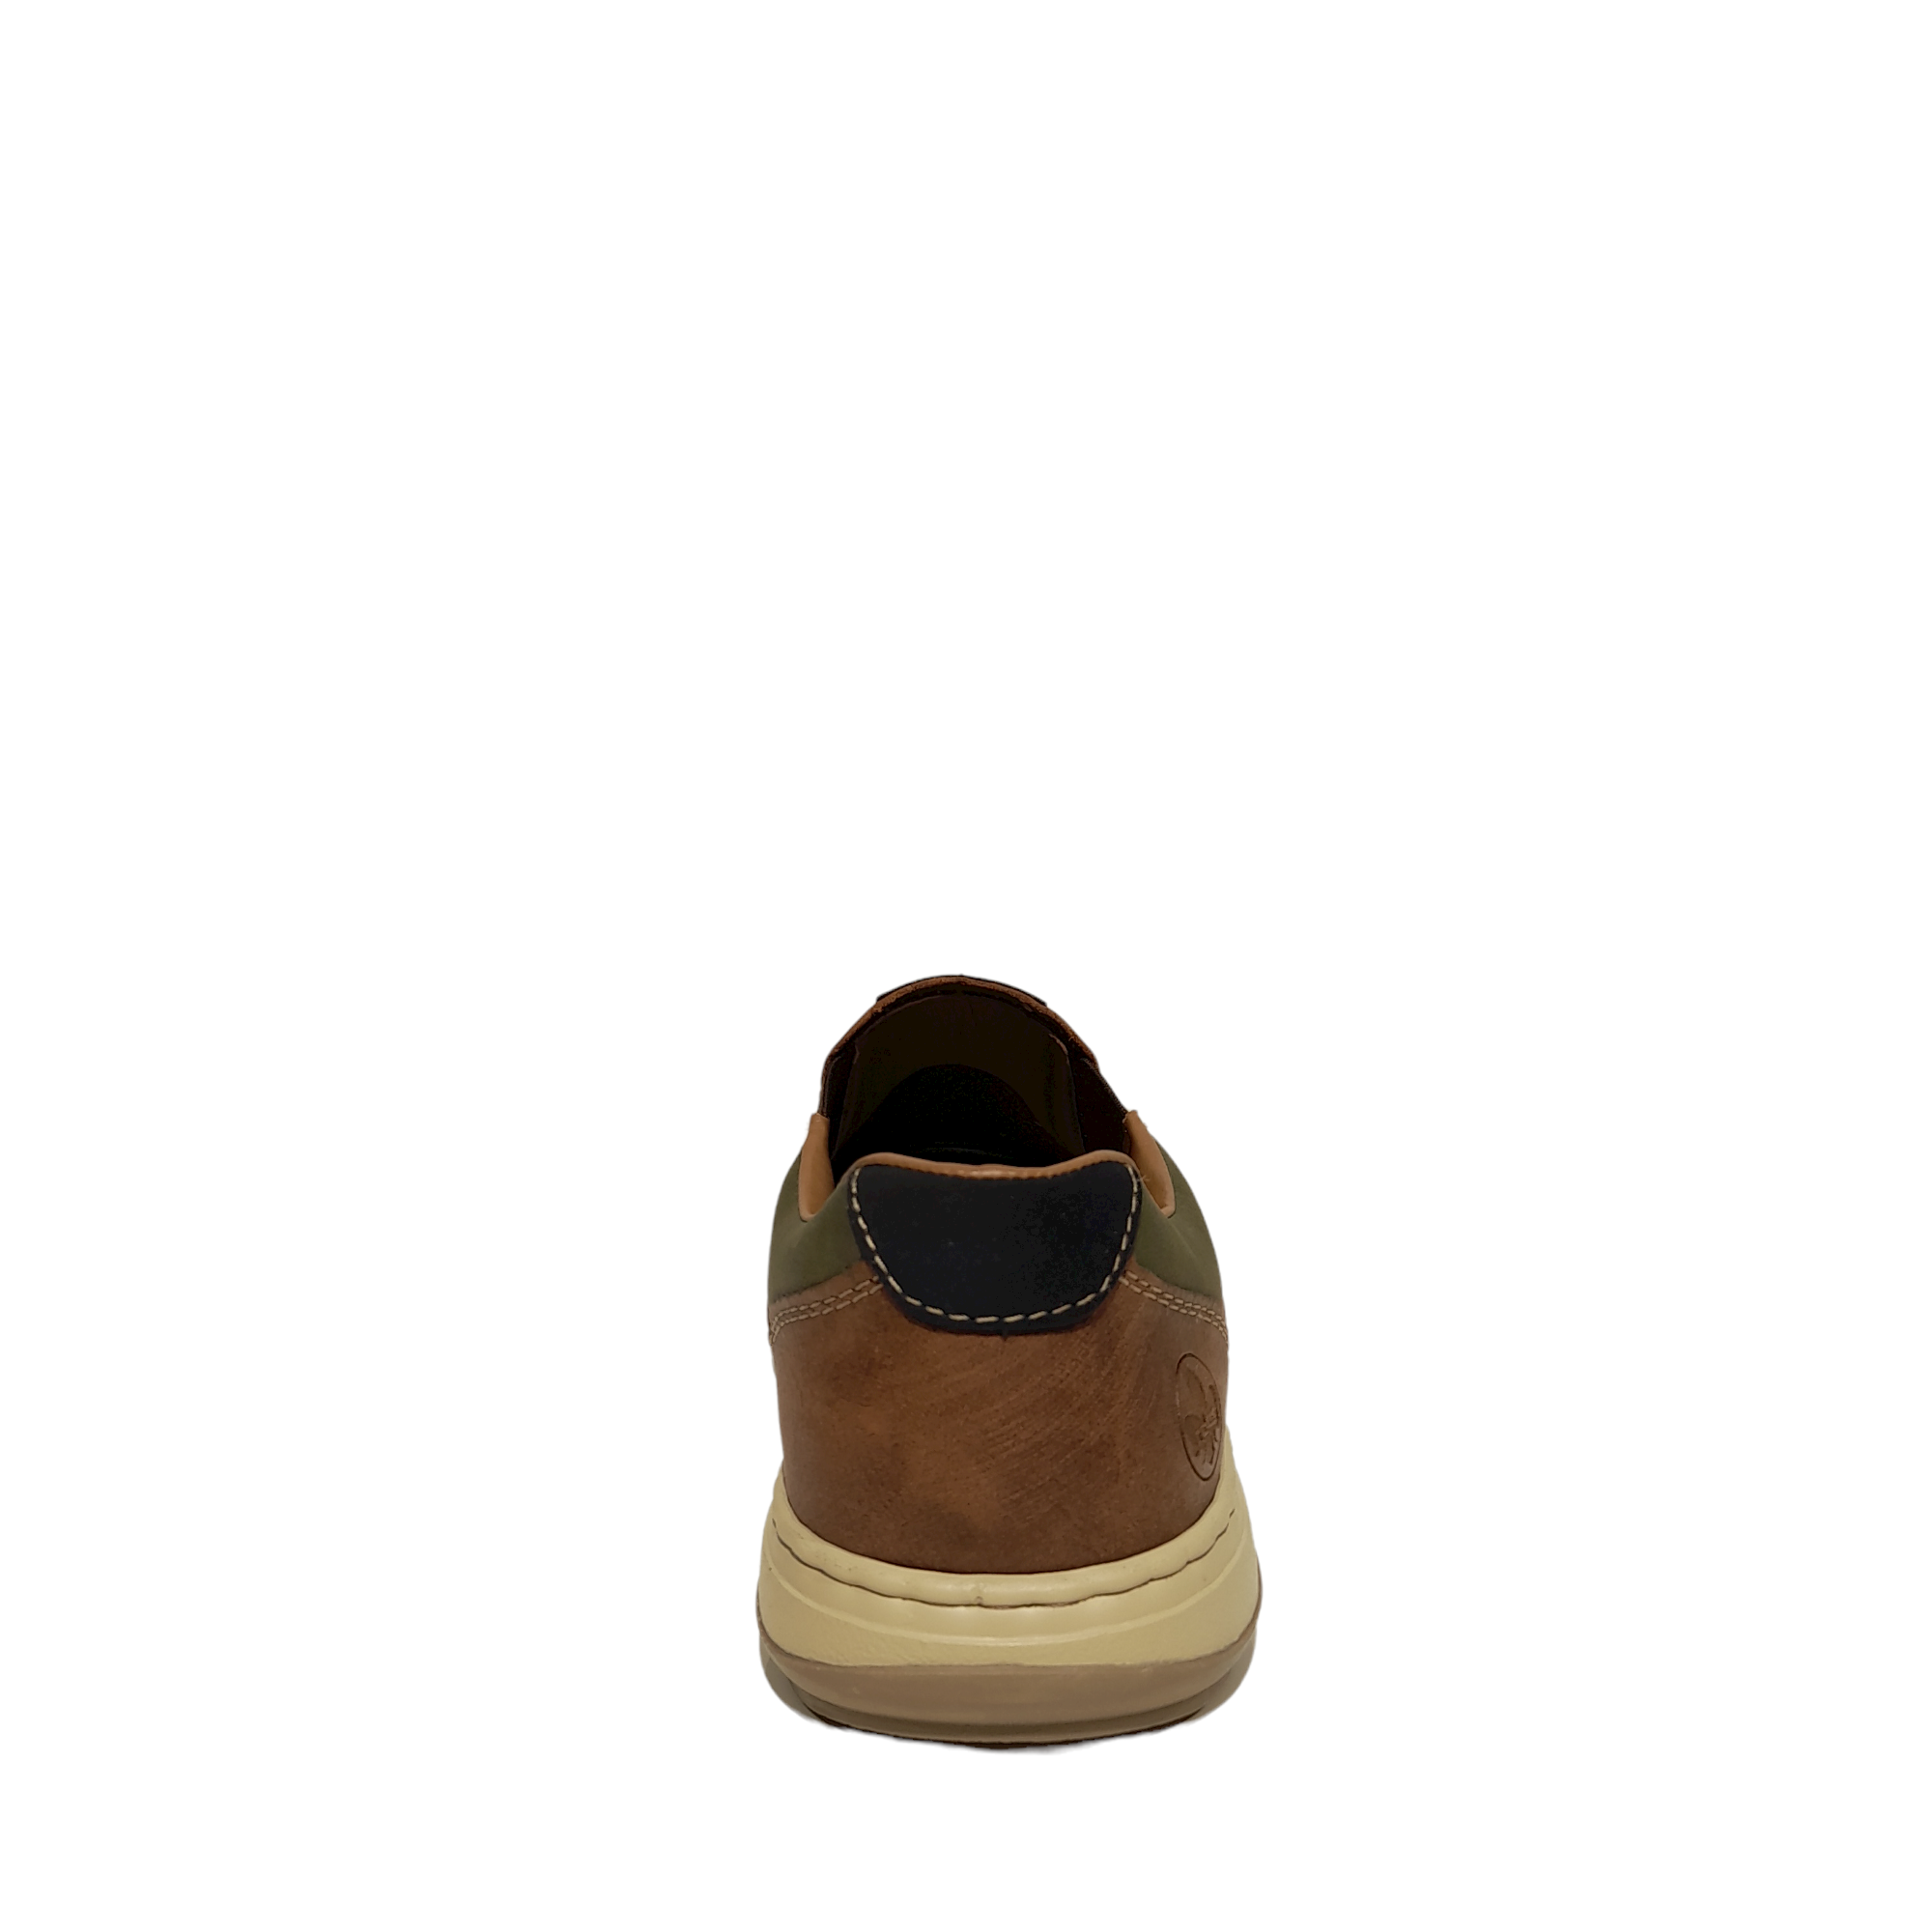 17371 M - shoe&me - Rieker - Shoe - Mens, Shoes